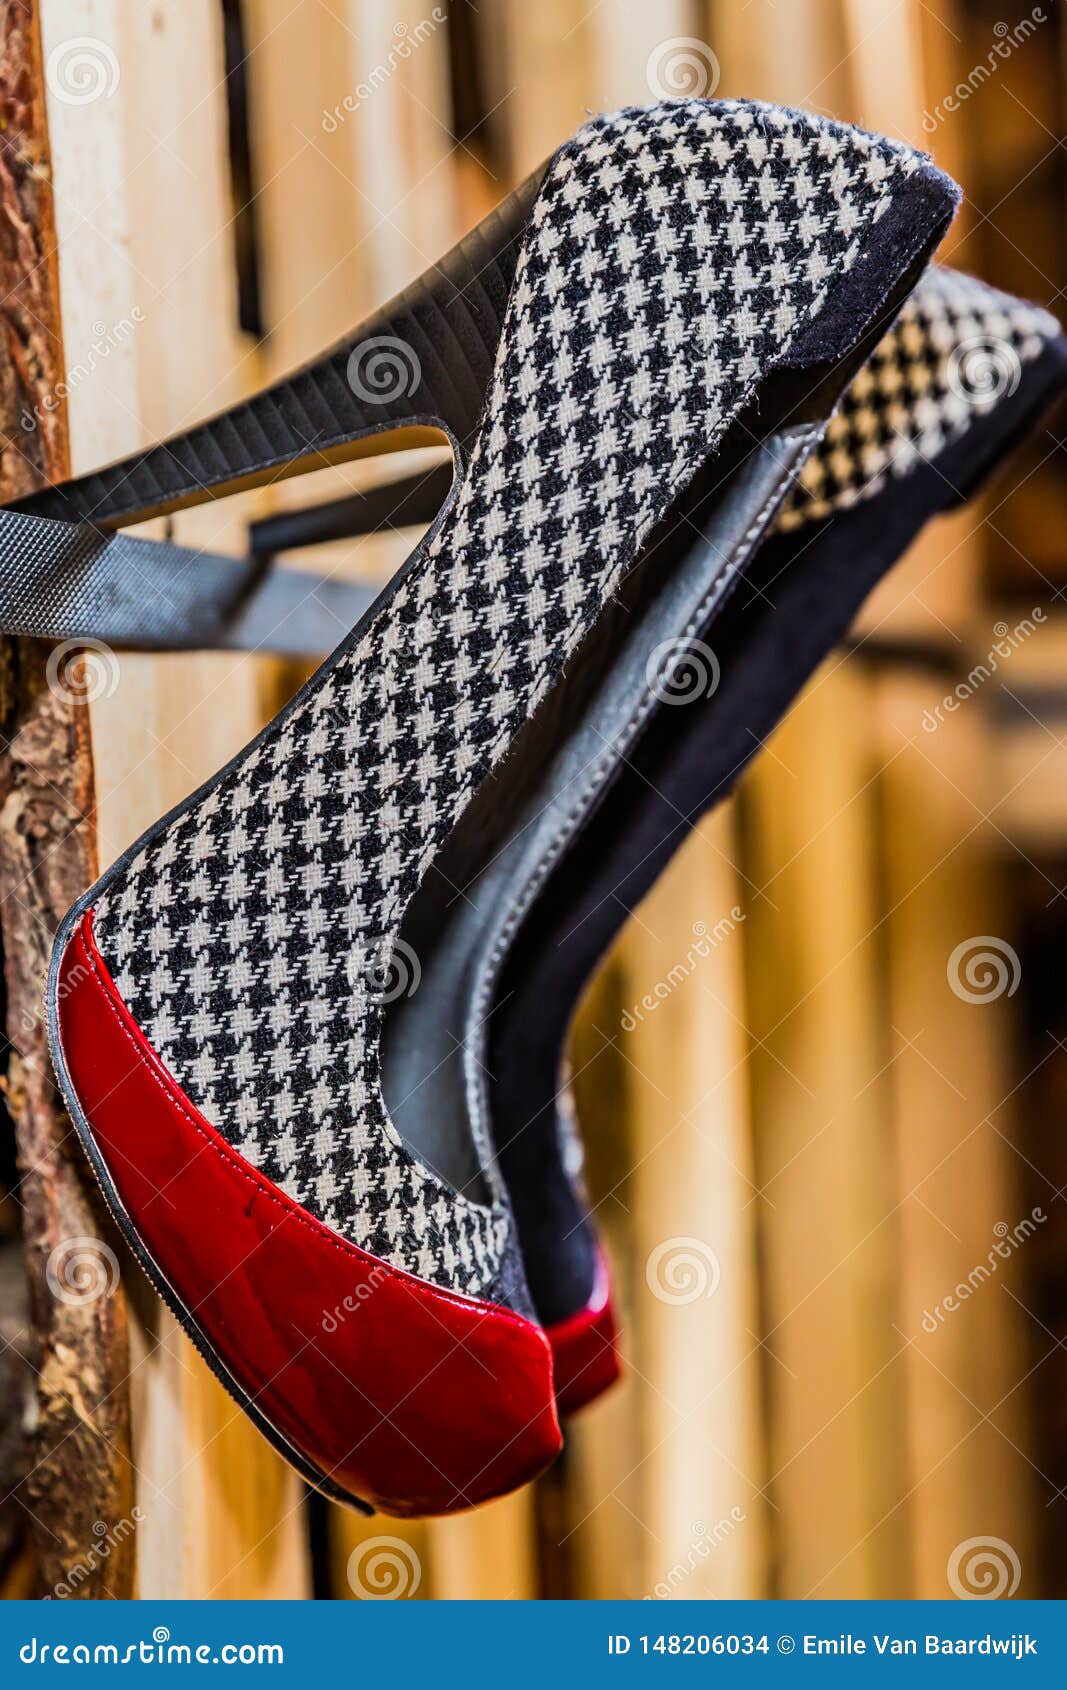 Pares De Zapatos De Tacón Alto Con Una Combinación De Colores Negros, Rojos Y Blancos Foto de archivo - Imagen de fashionable: